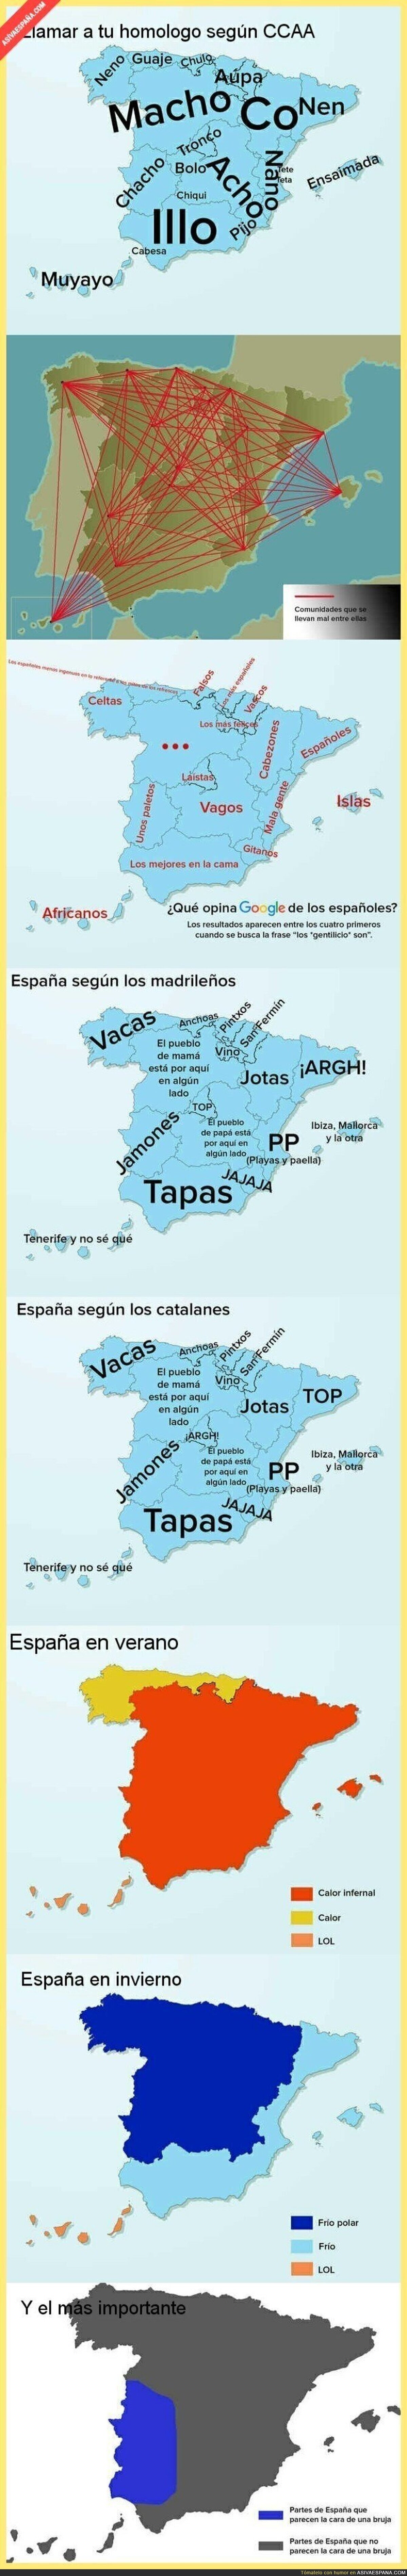 Los diferentes mapas para conocer España